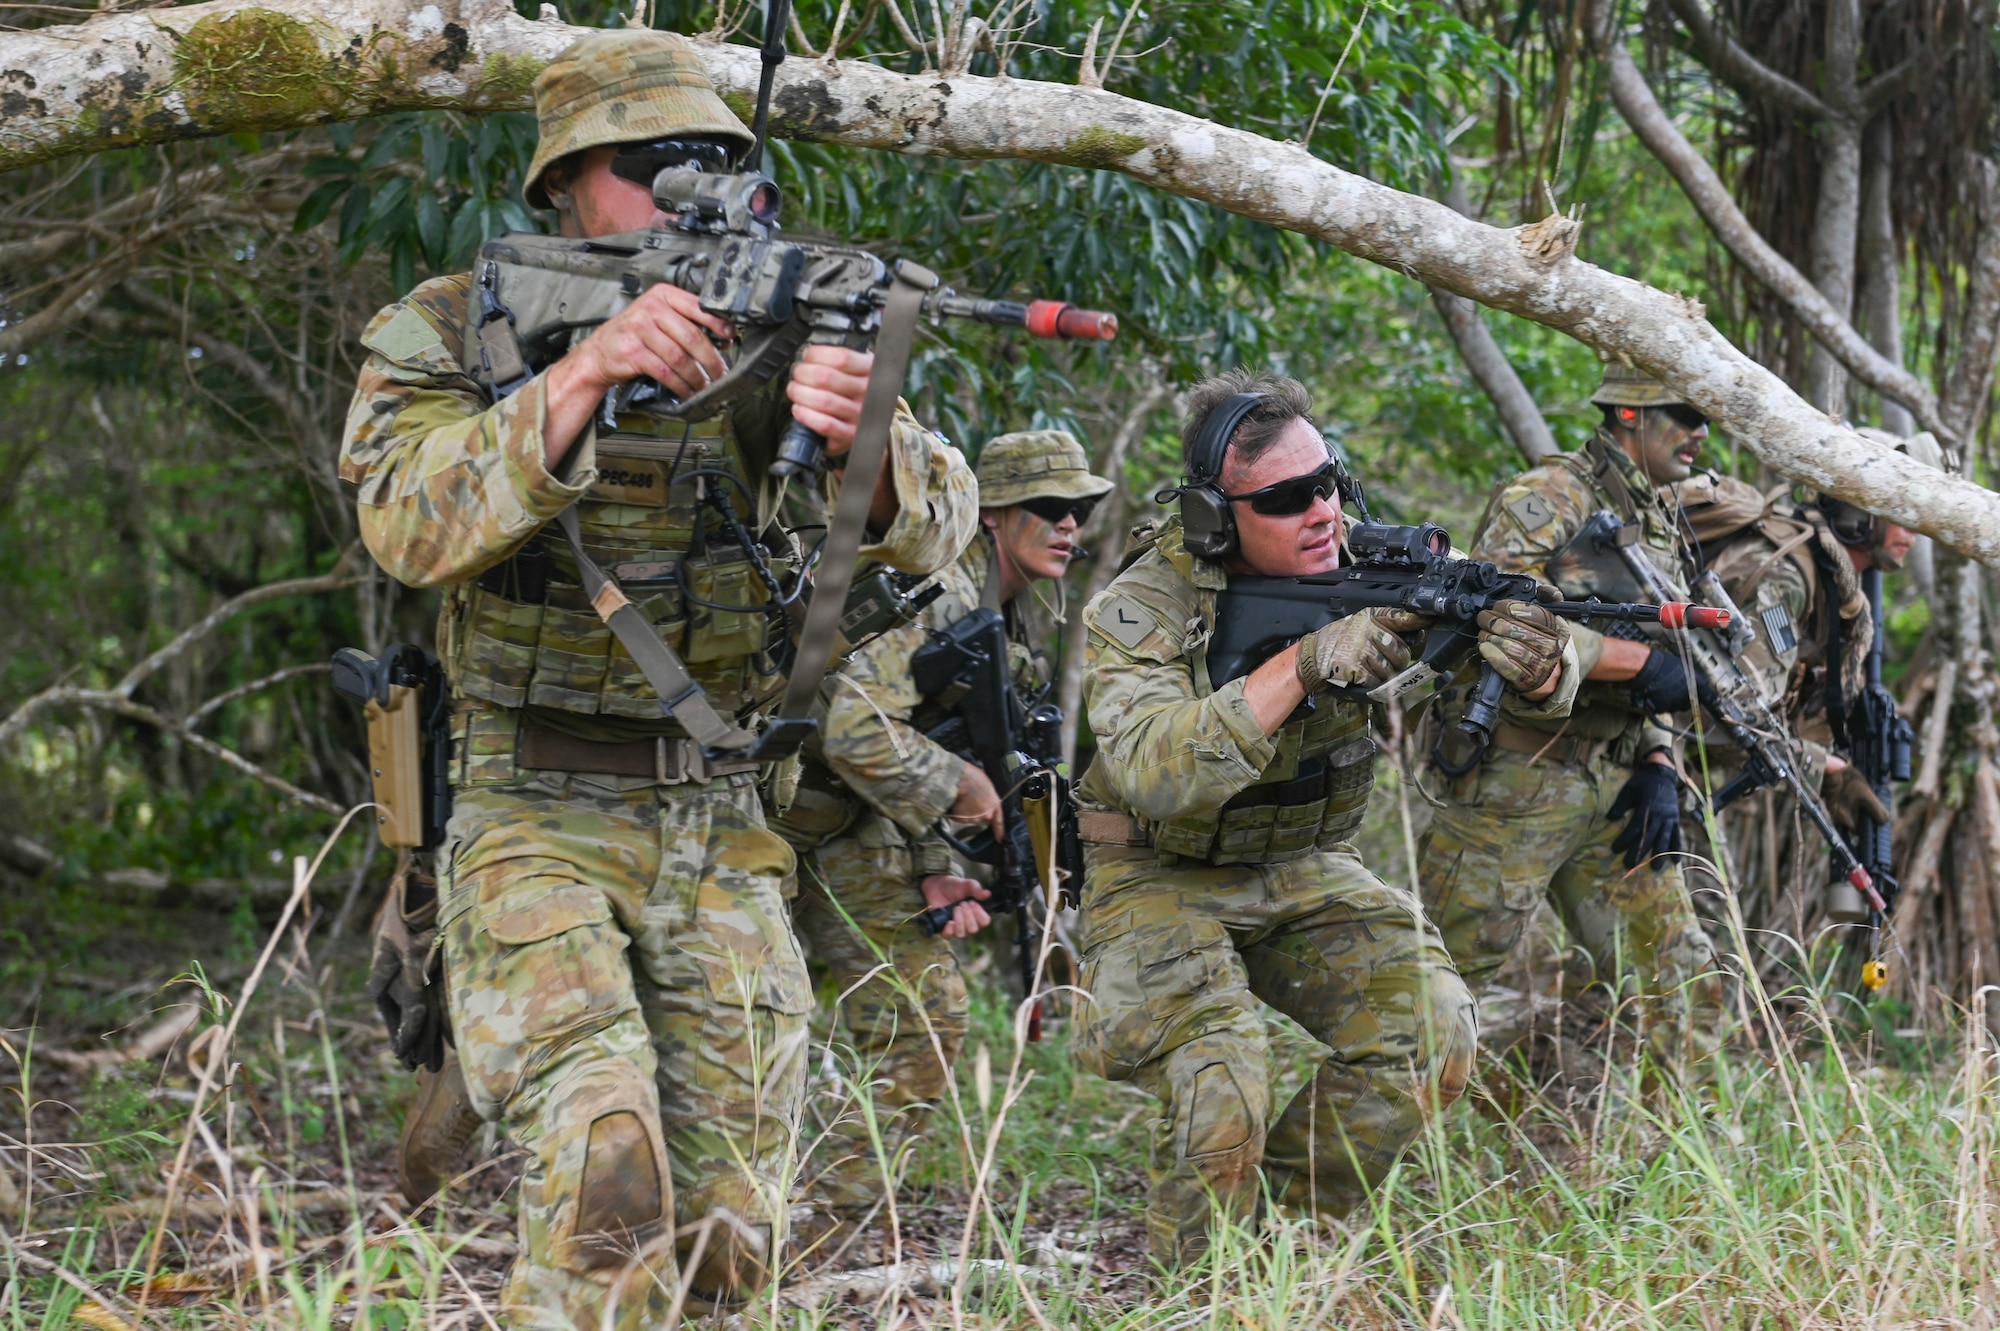 Australians shooting at fake enemies